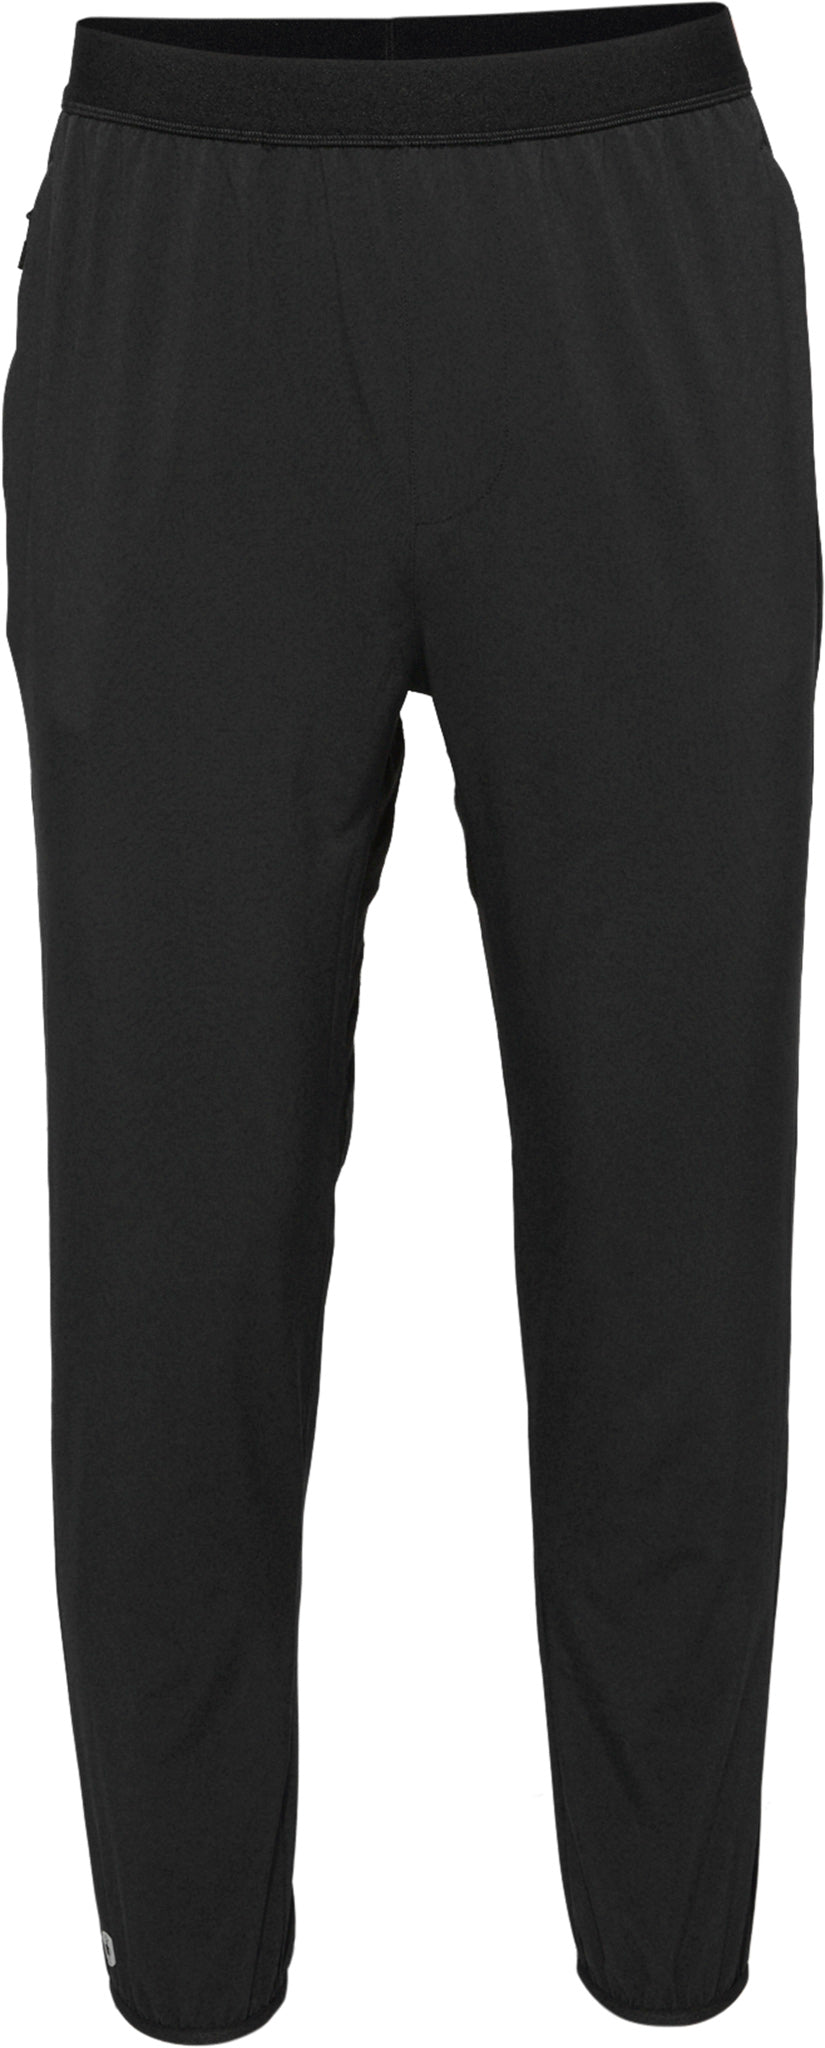 Tek Gear Gray Active Pants Size L - 44% off